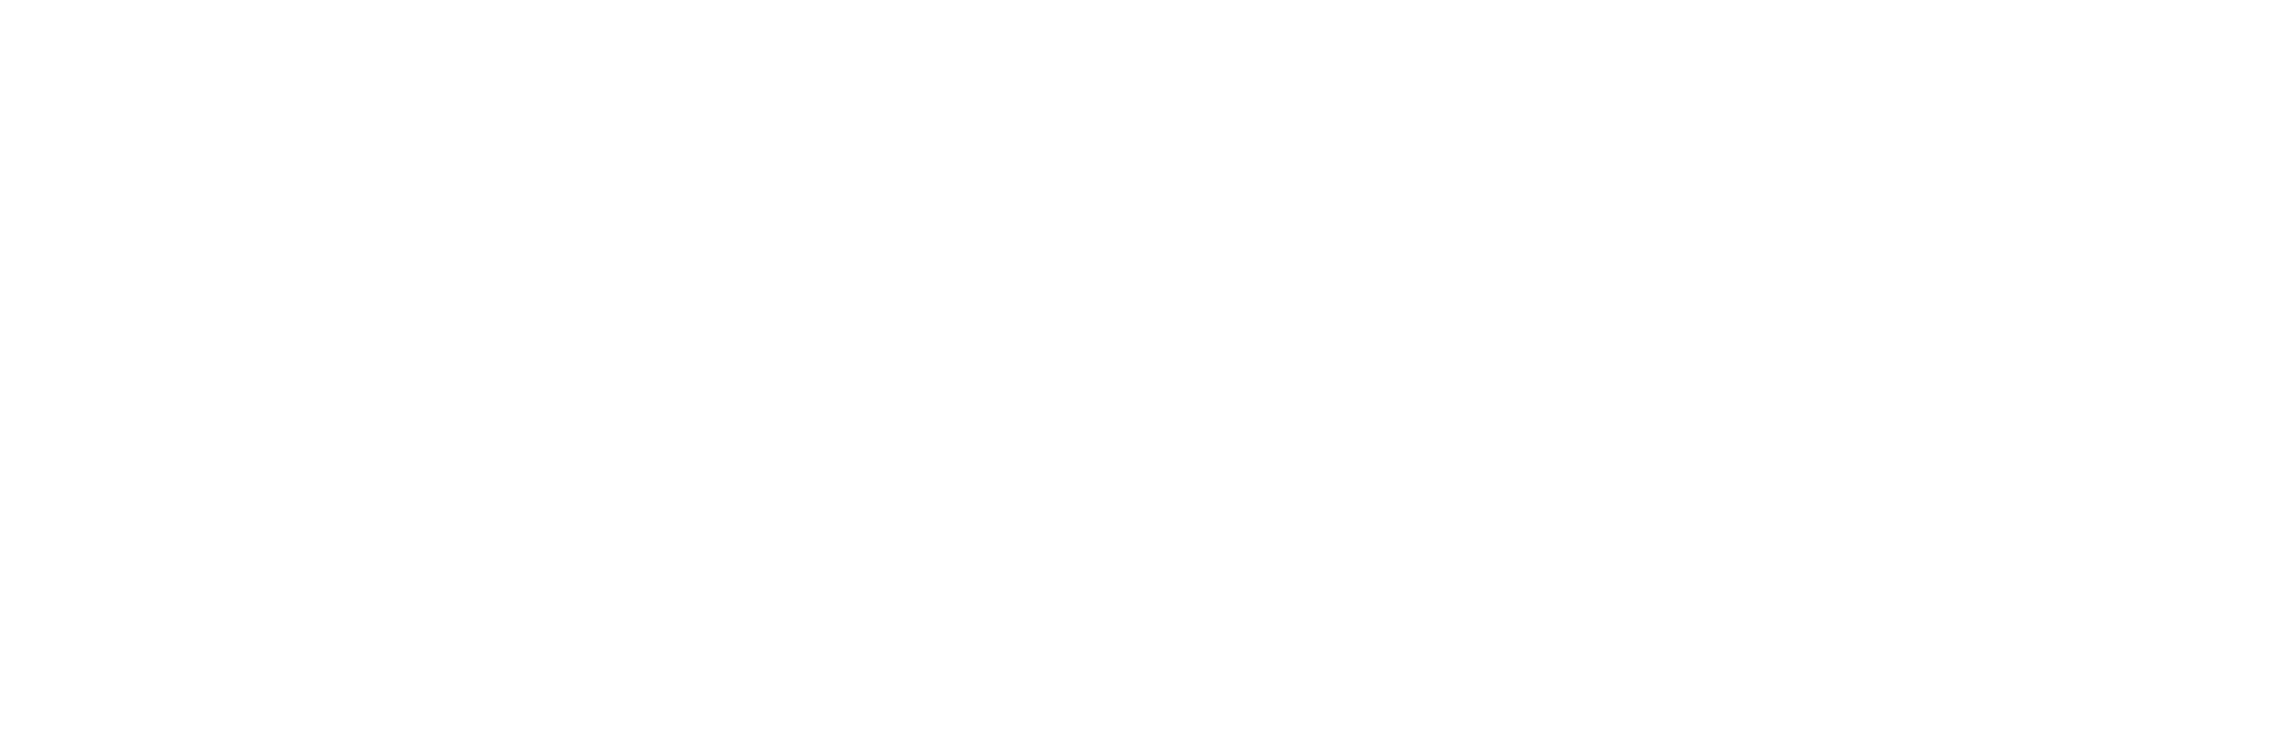 CATEGORY COMPANY